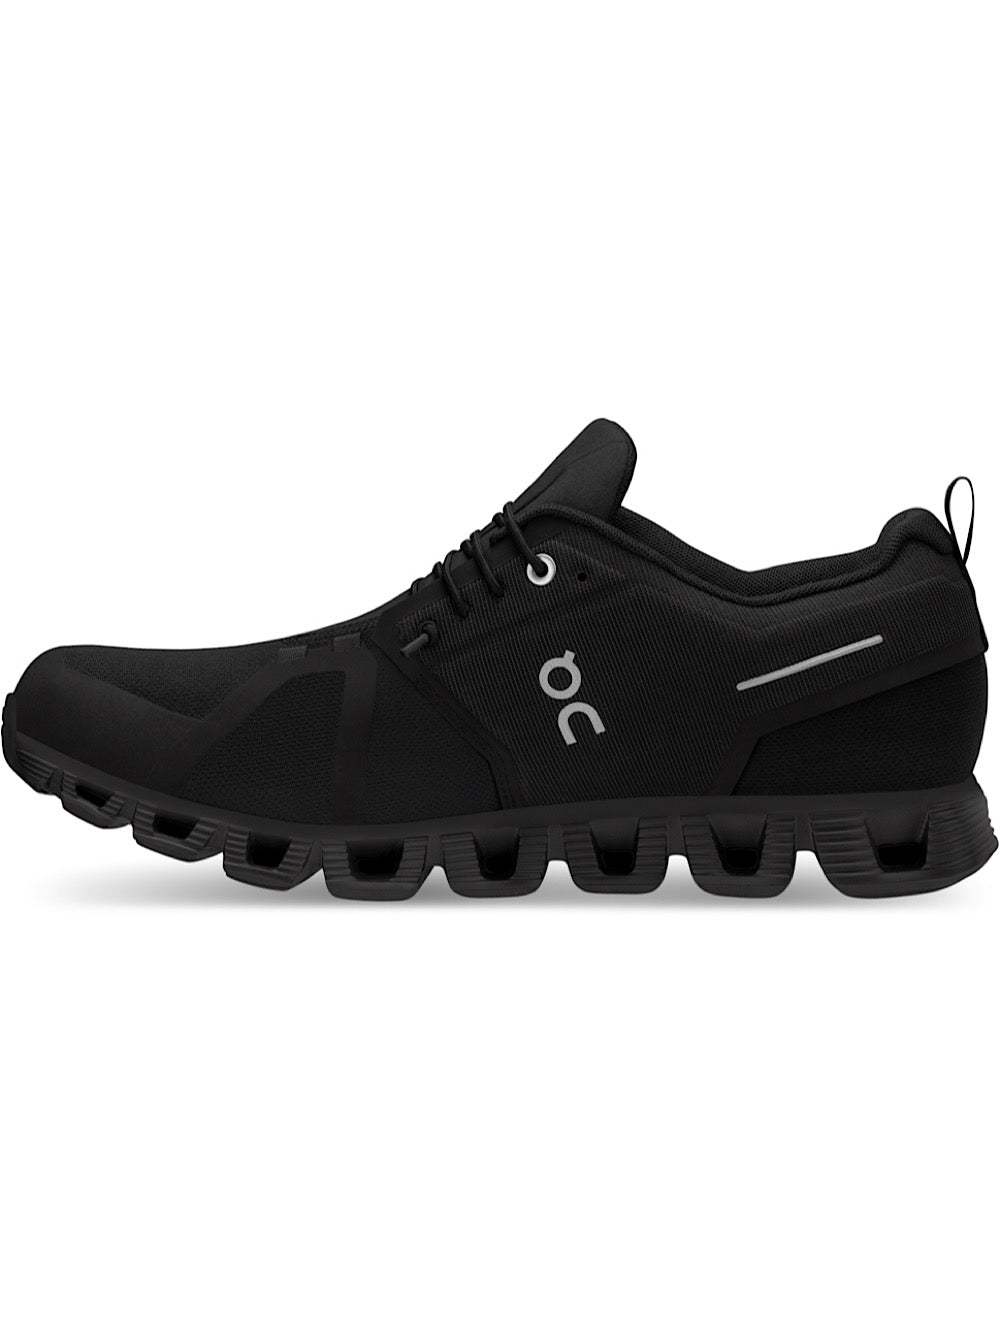 ON Sneakers Running mod. Cloud 5 Waterproof nero